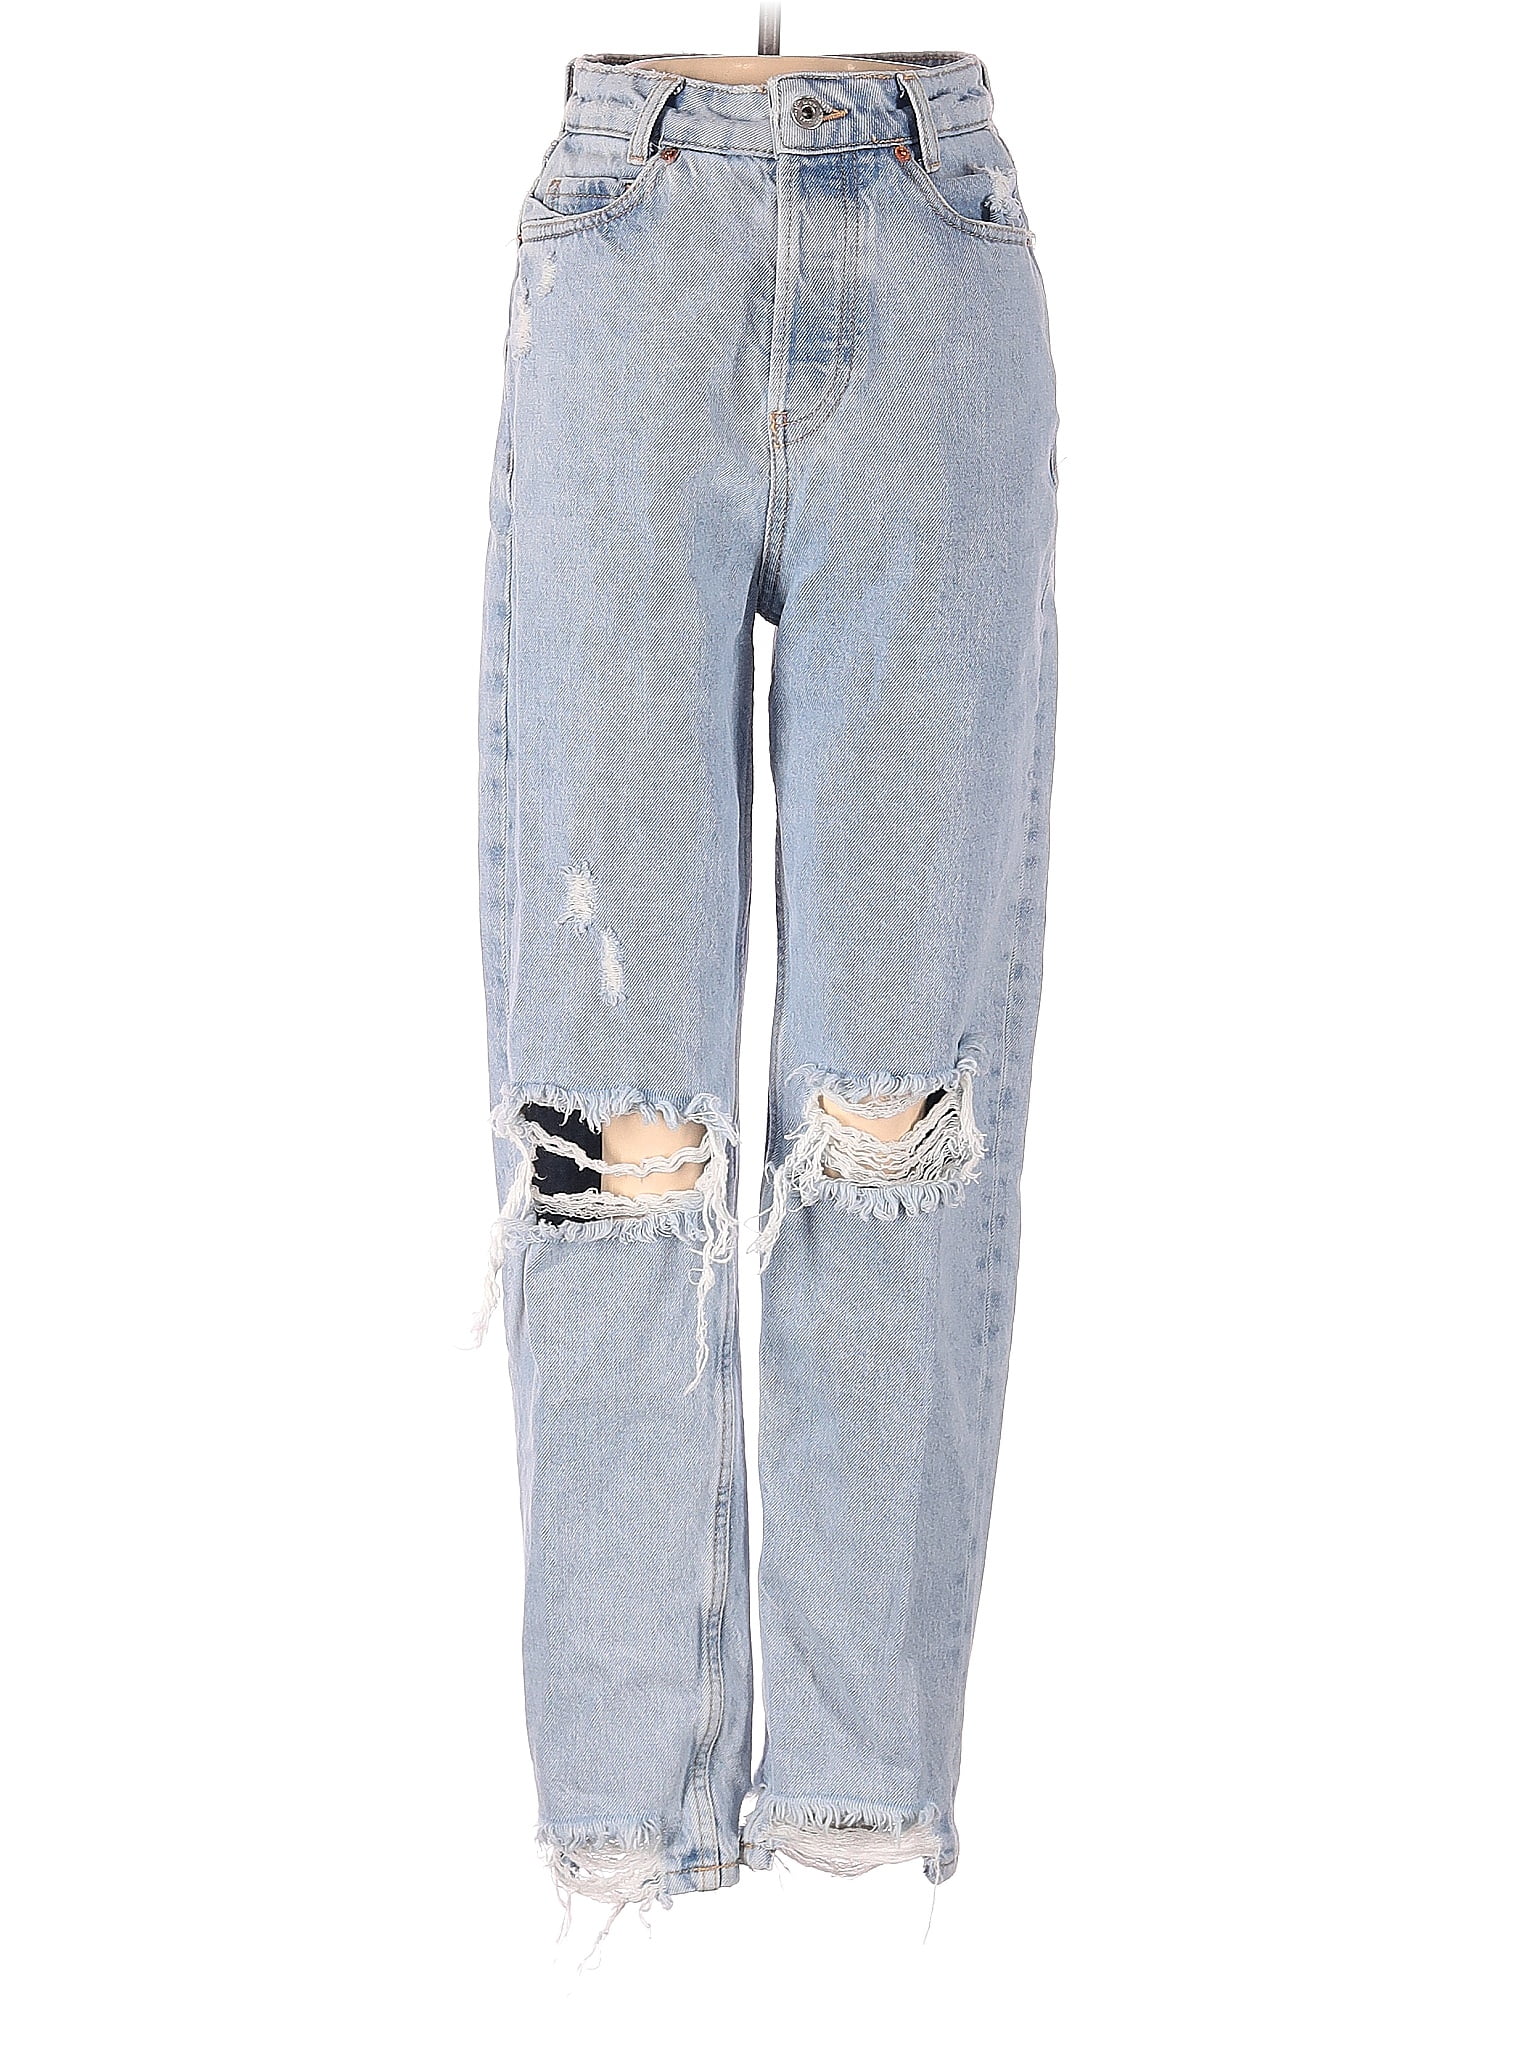 Zara 100% Cotton Blue Jeans Size 0 - 46% off | thredUP